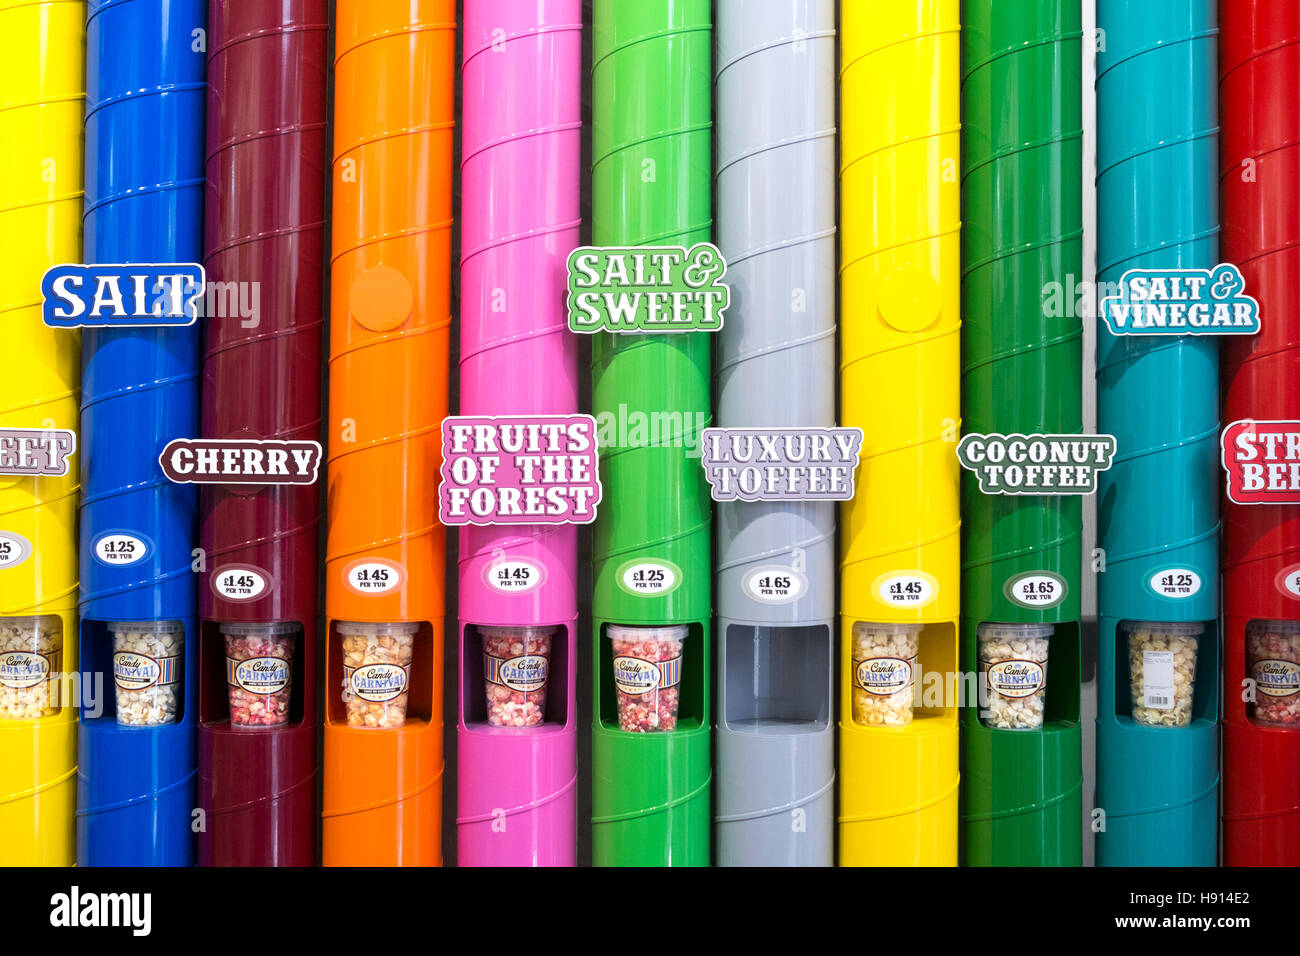 Una pantalla de variedades de sabores de palomitas de maíz, la sal, la cereza, dulces, frutas, lujo toffee, Coco, en tubos verticales de color Foto de stock